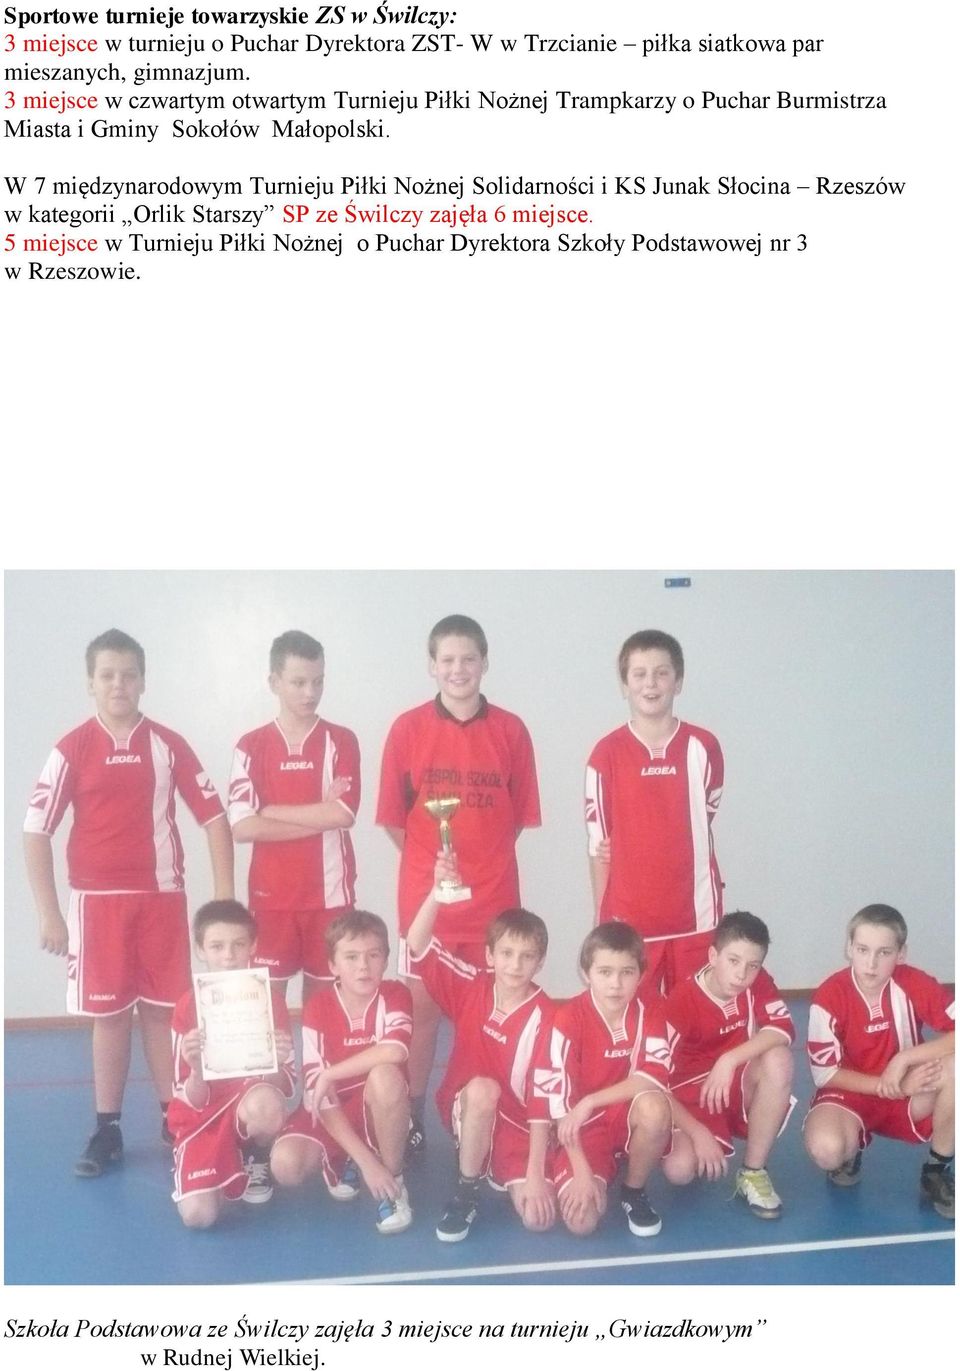 W 7 międzynarodowym Turnieju Piłki Nożnej Solidarności i KS Junak Słocina Rzeszów w kategorii Orlik Starszy SP ze Świlczy zajęła 6 miejsce.